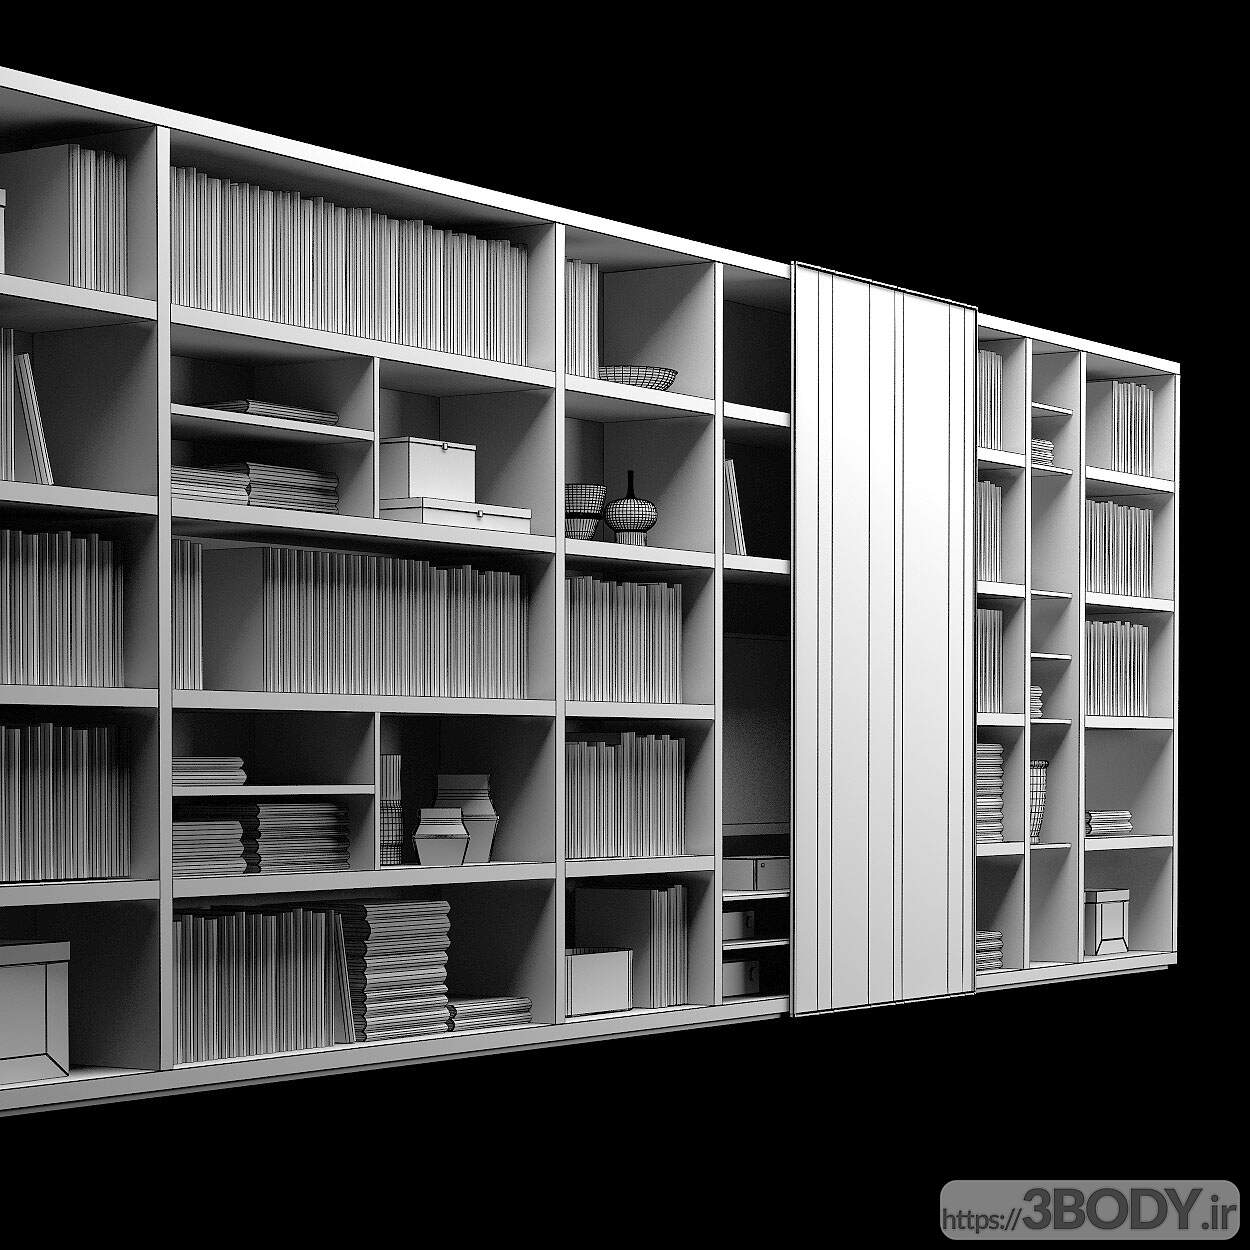 مدل سه بعدی کتابخانه خانگی عکس 2